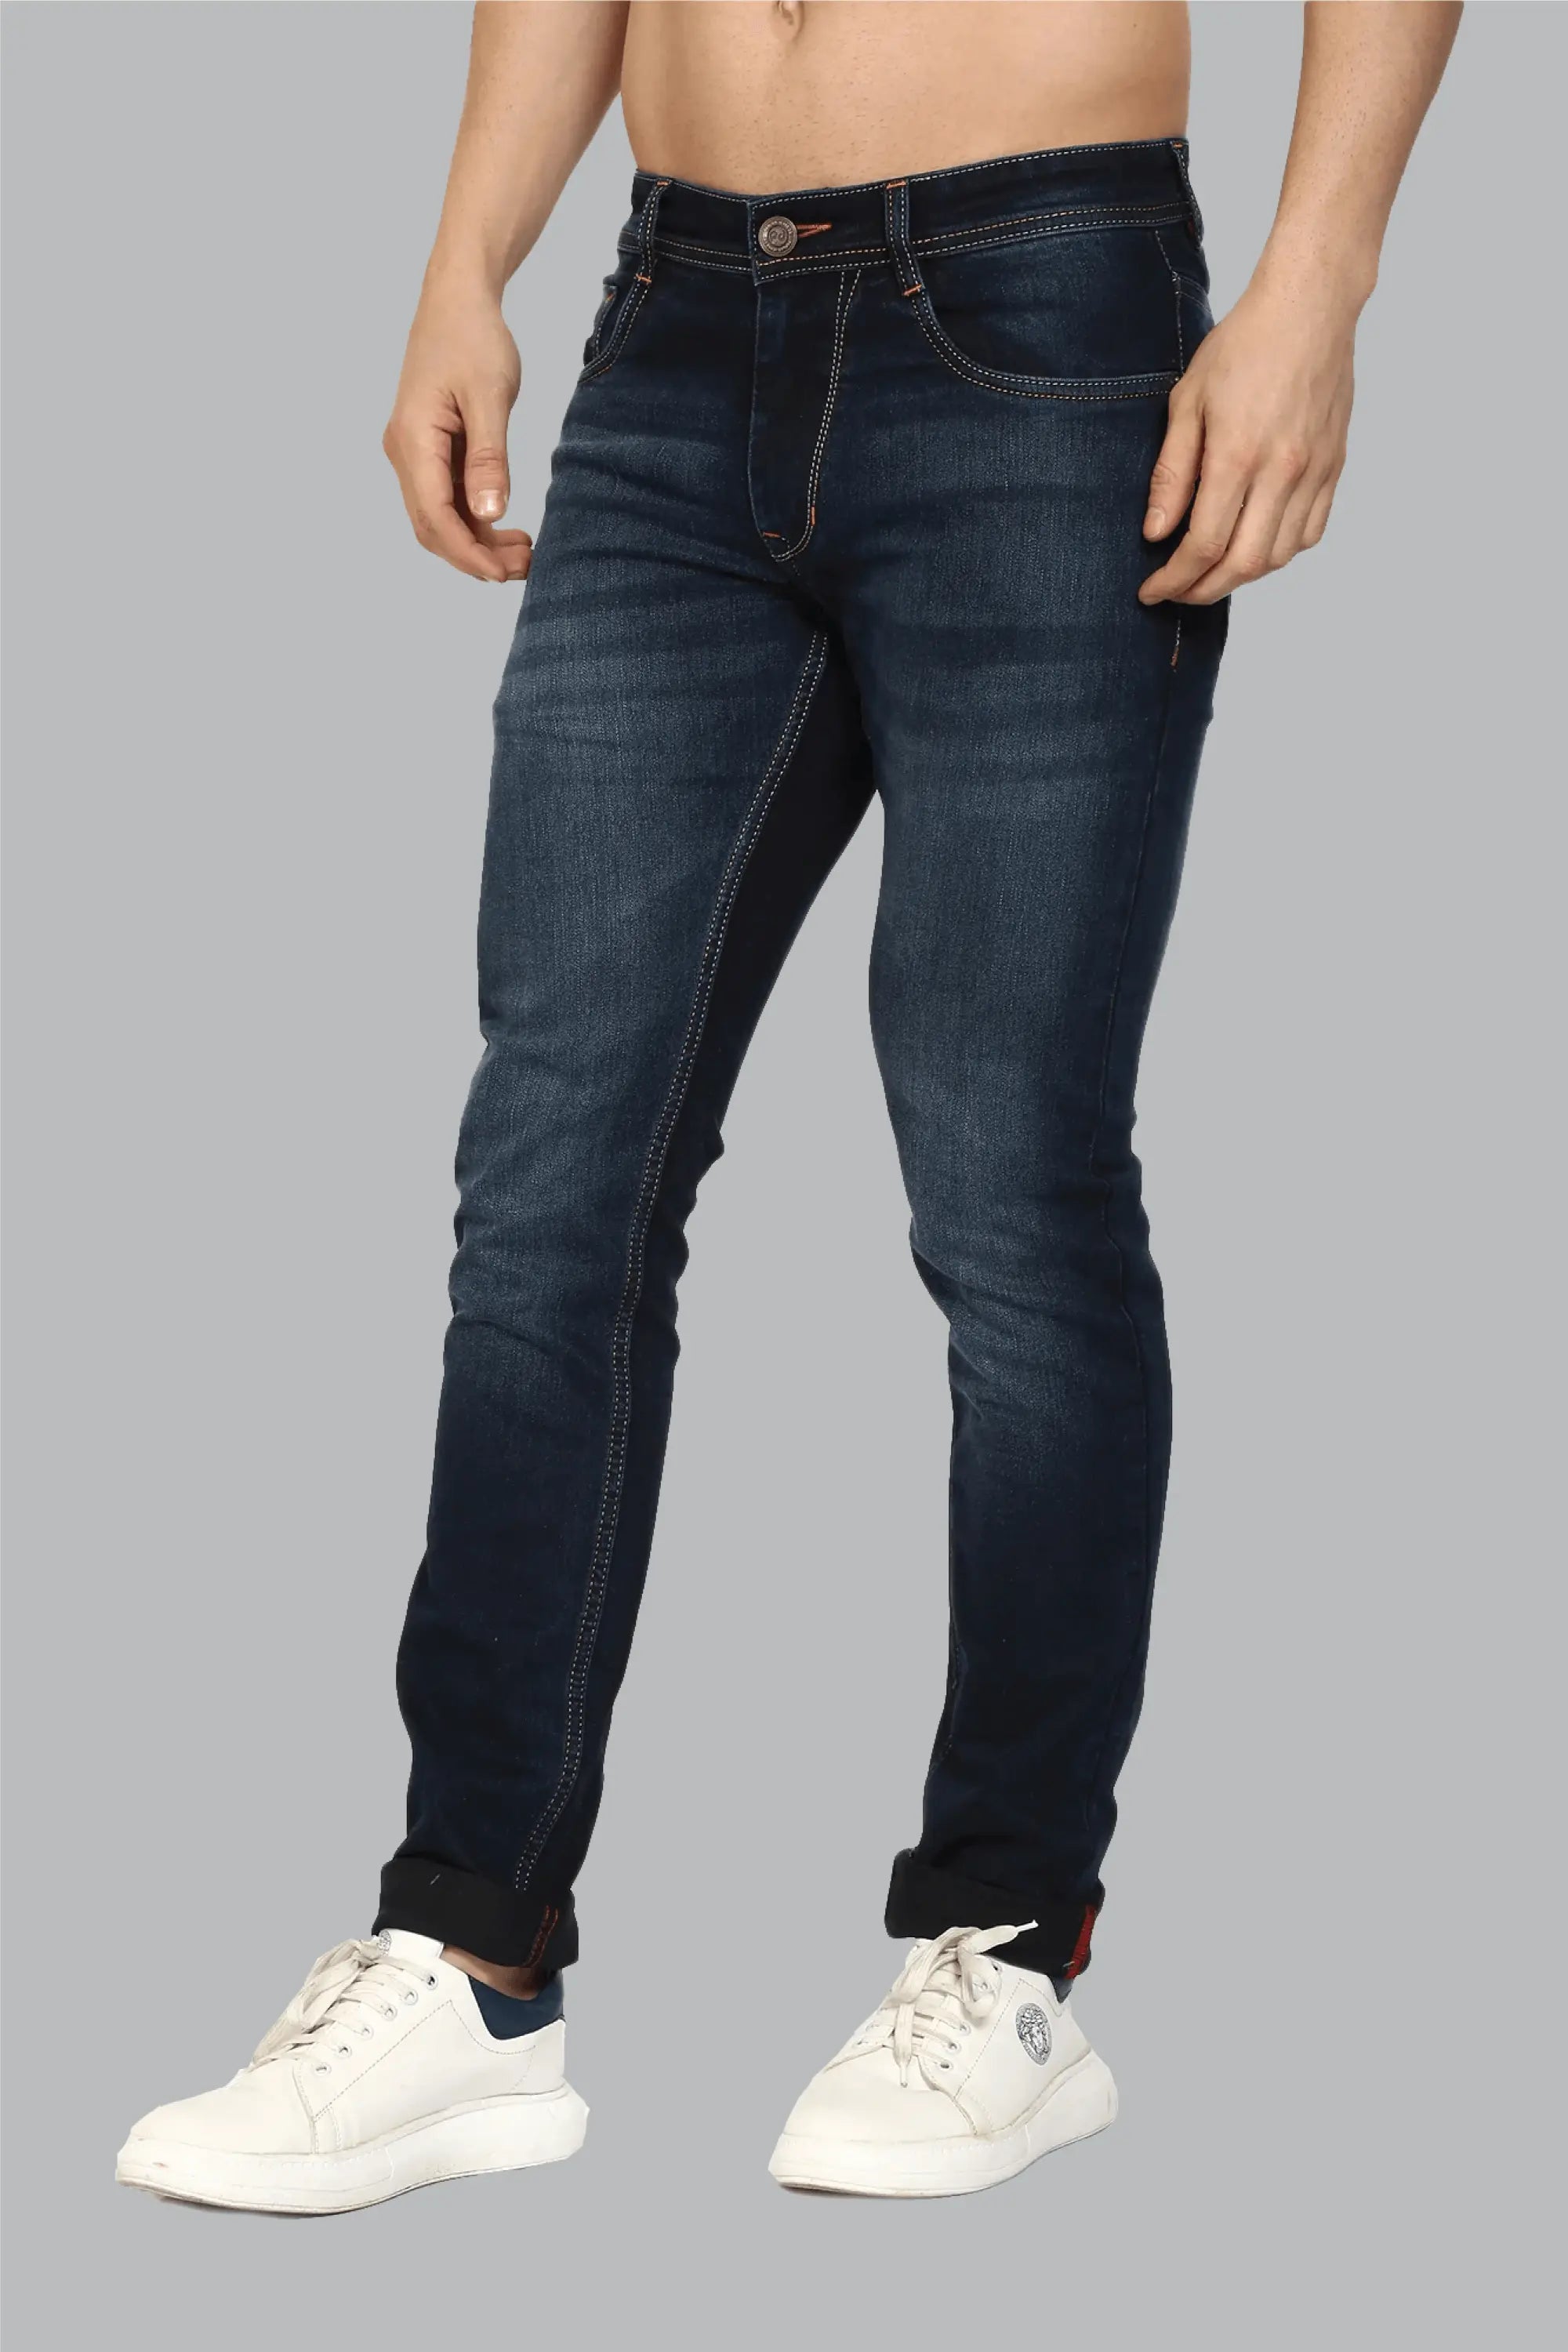 Buy Lymio Jeans for Men | Men Jeans | Men Jeans Pants | Denim Jeans (Jeans-001)  (30) Black at Amazon.in